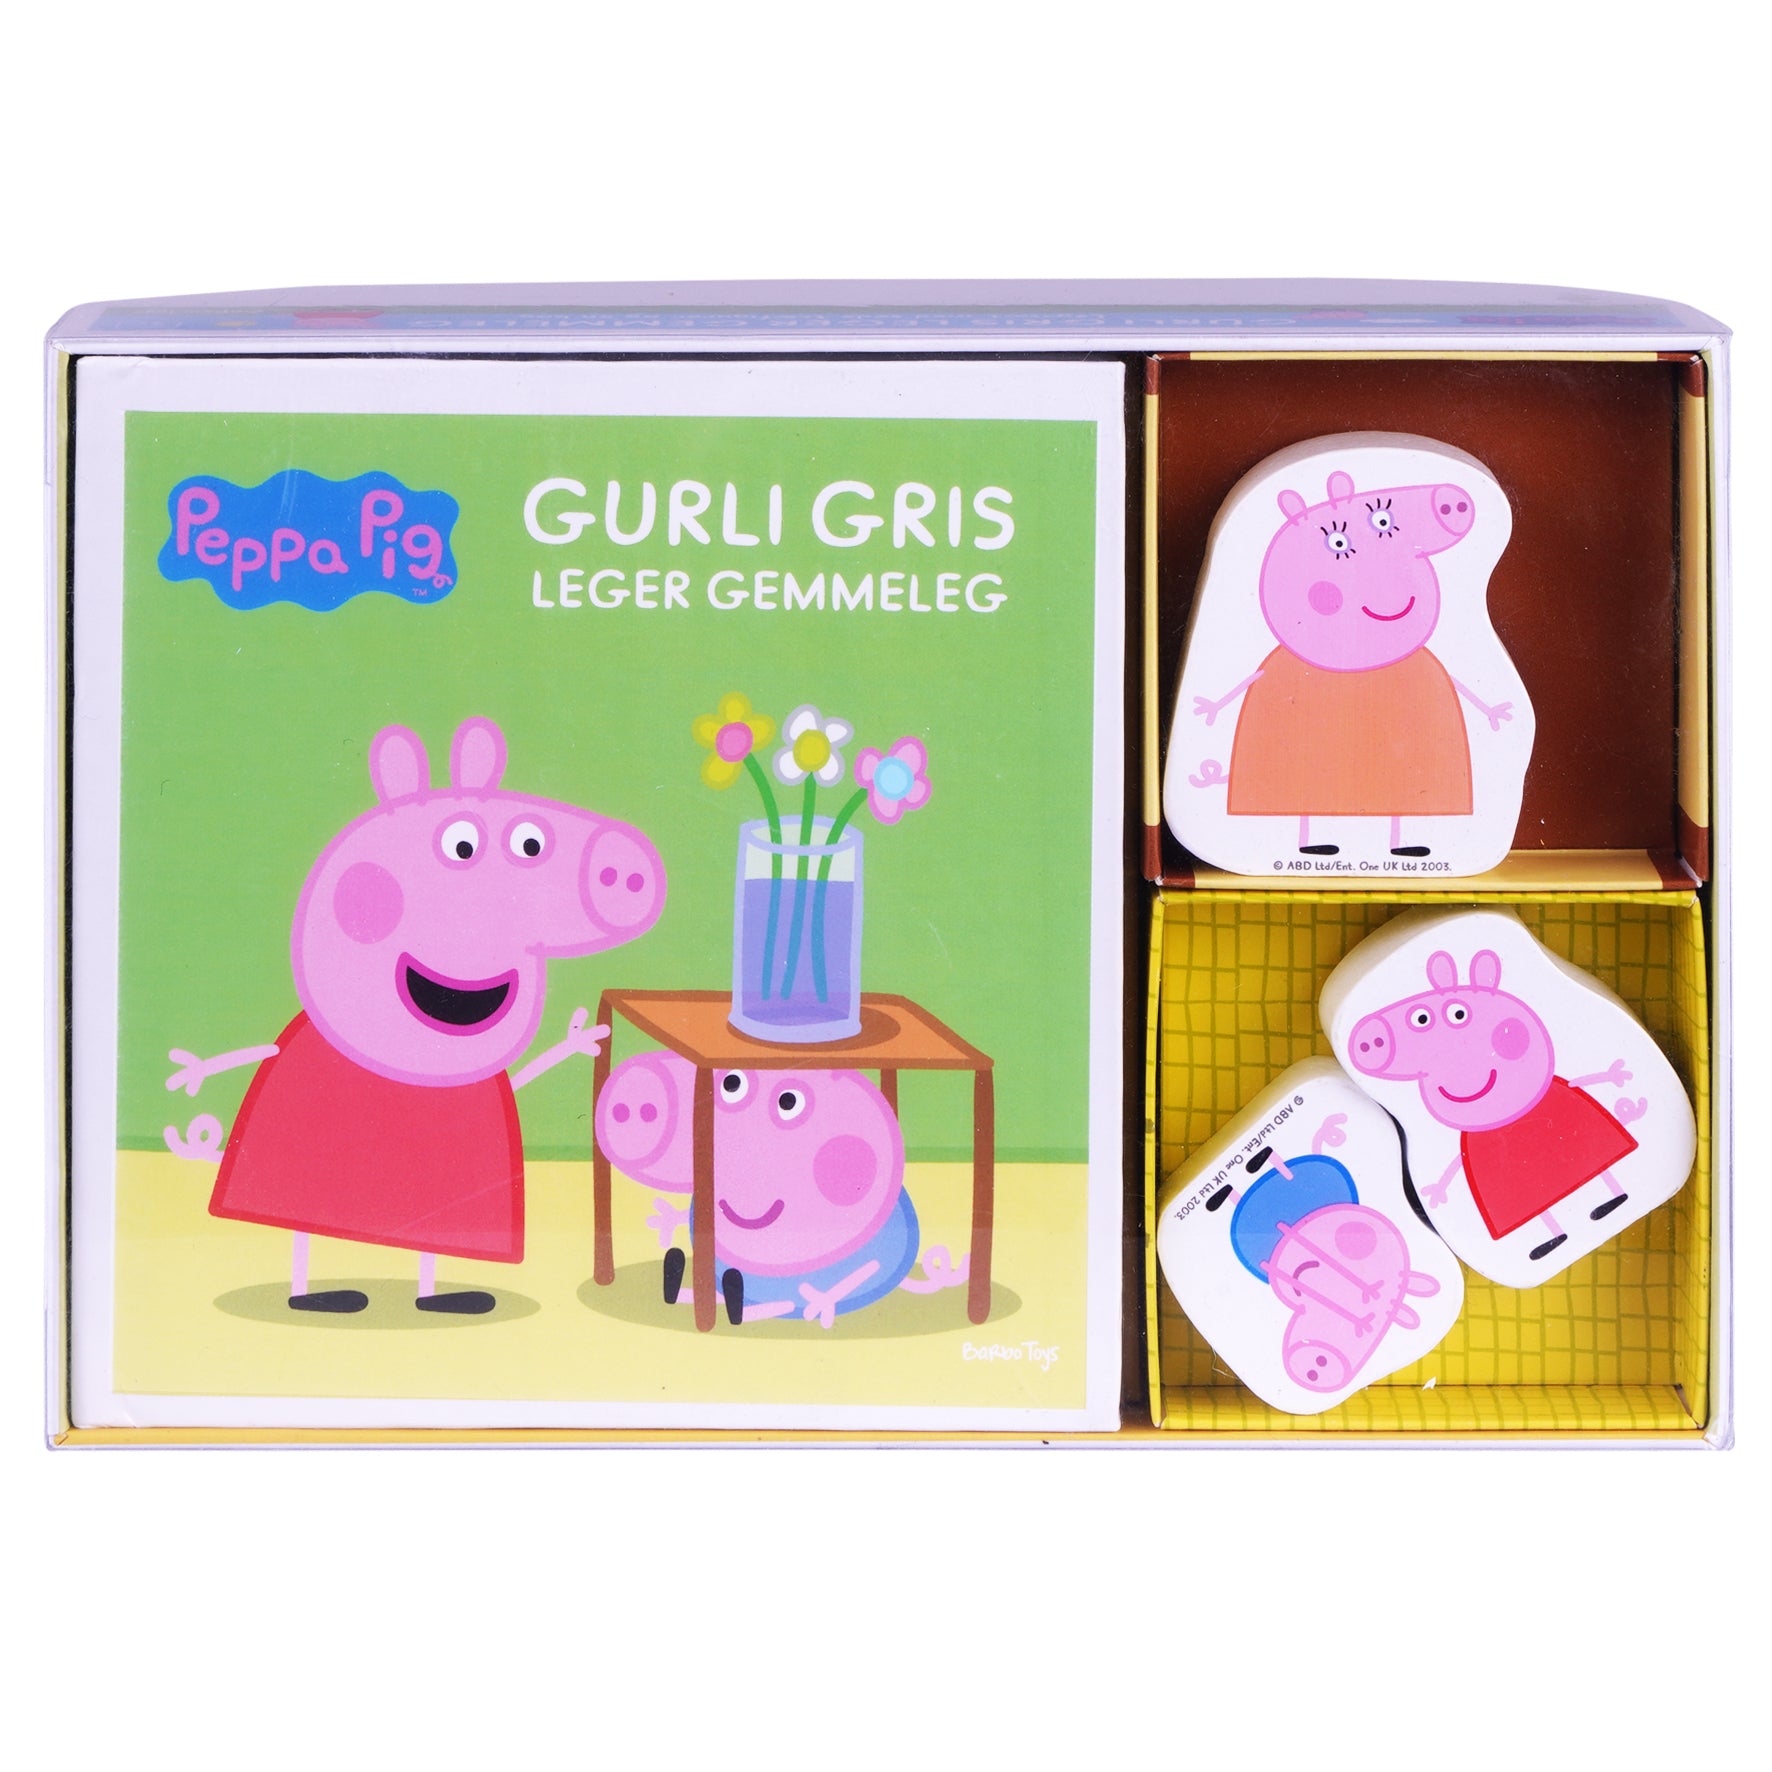 gurli gris leger gemmeleg legesæt med søde træfigurer og en bog